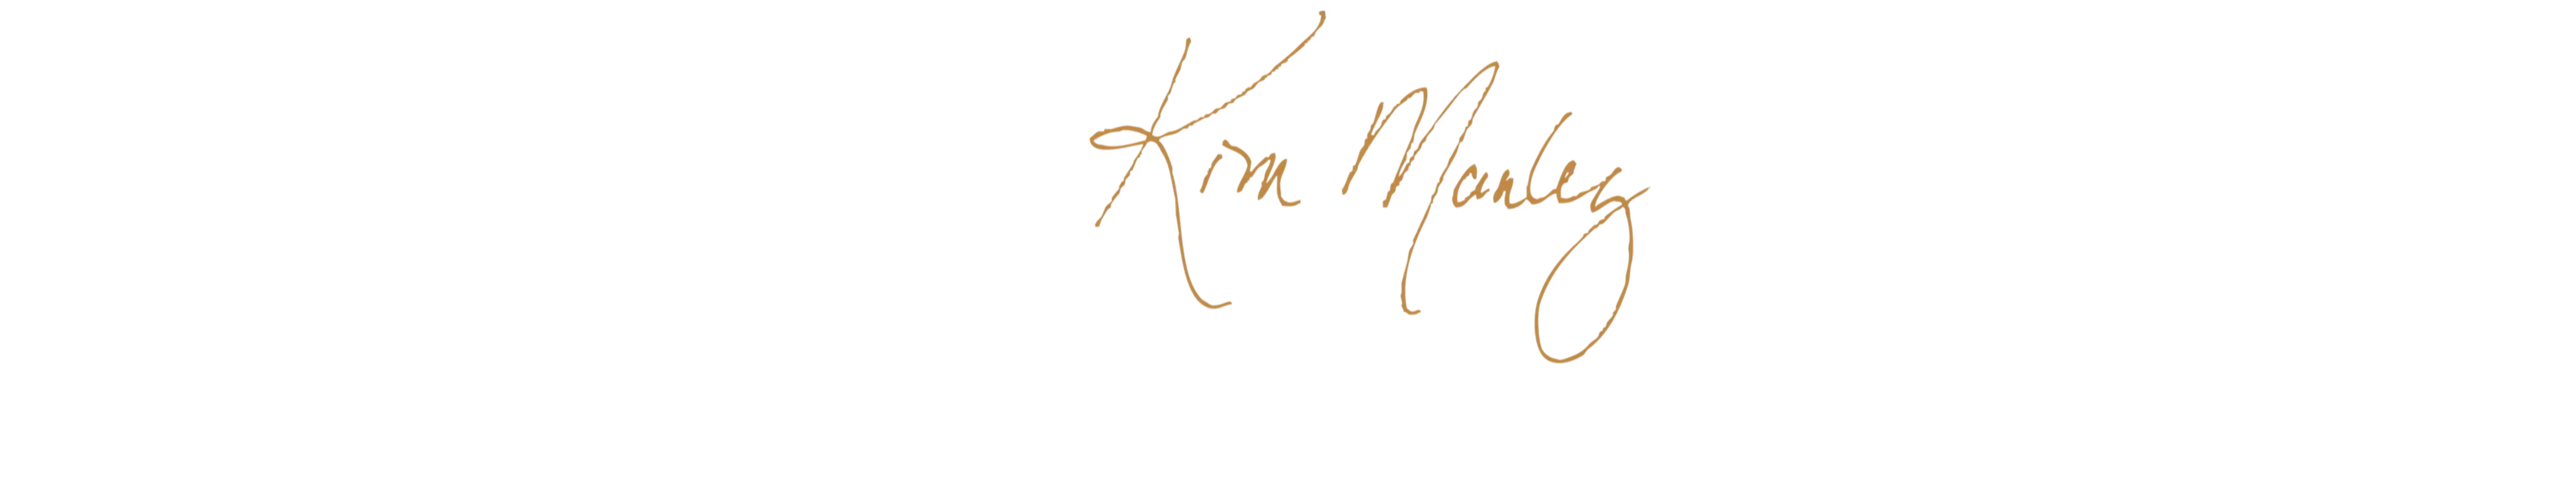 Kim Manley's signature.